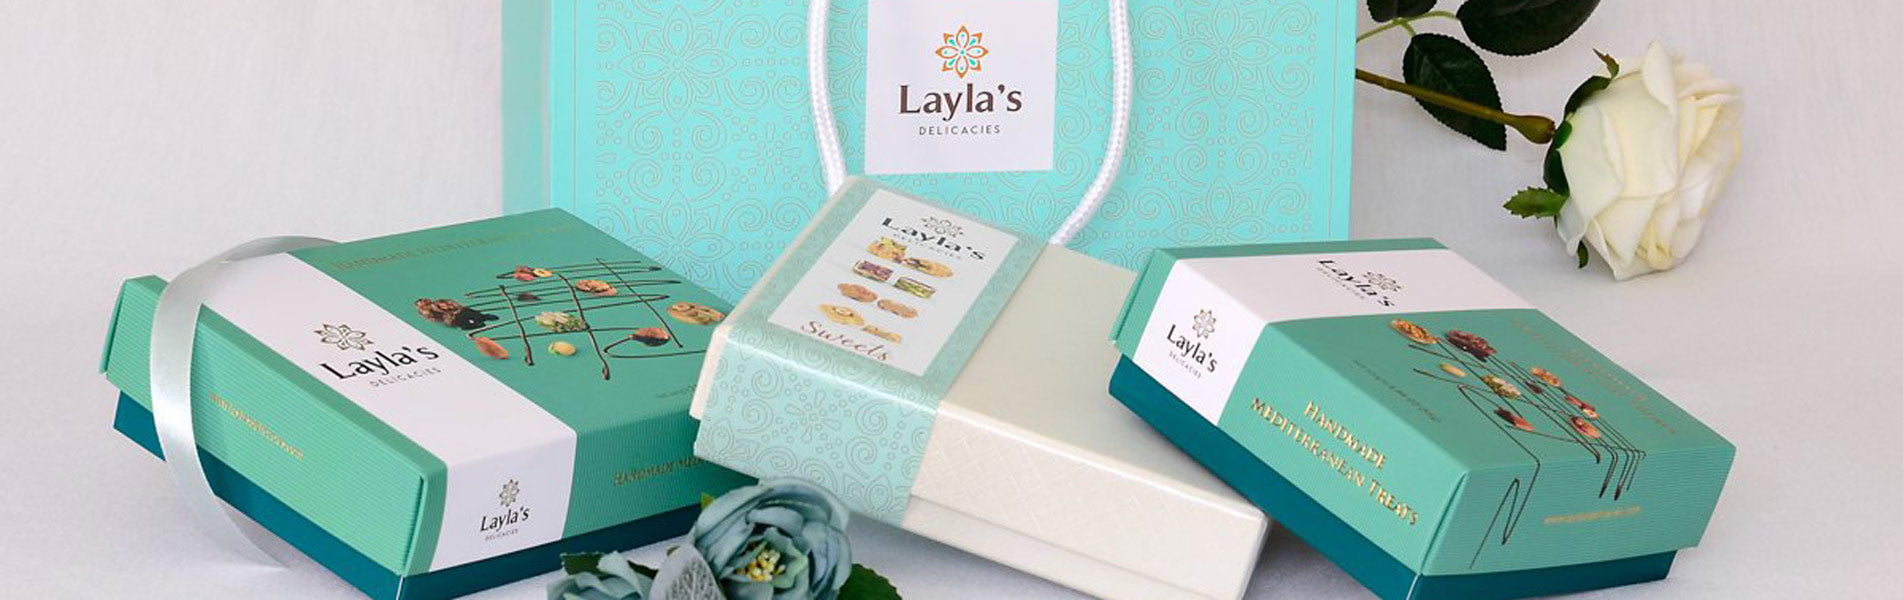 Laylas gift box